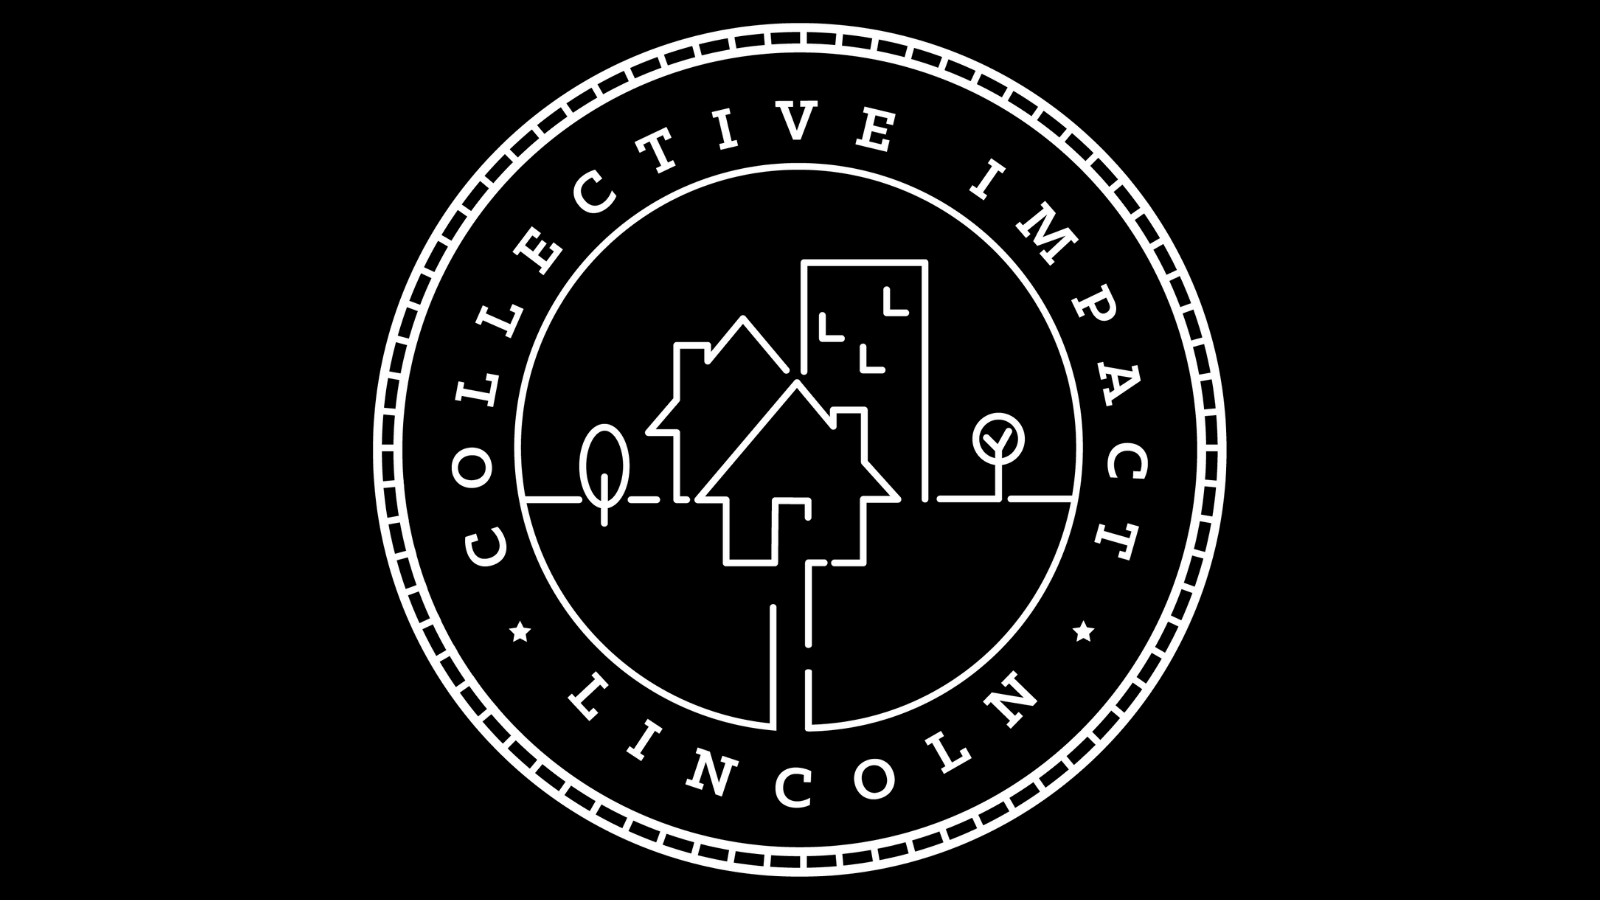 collective impact logo